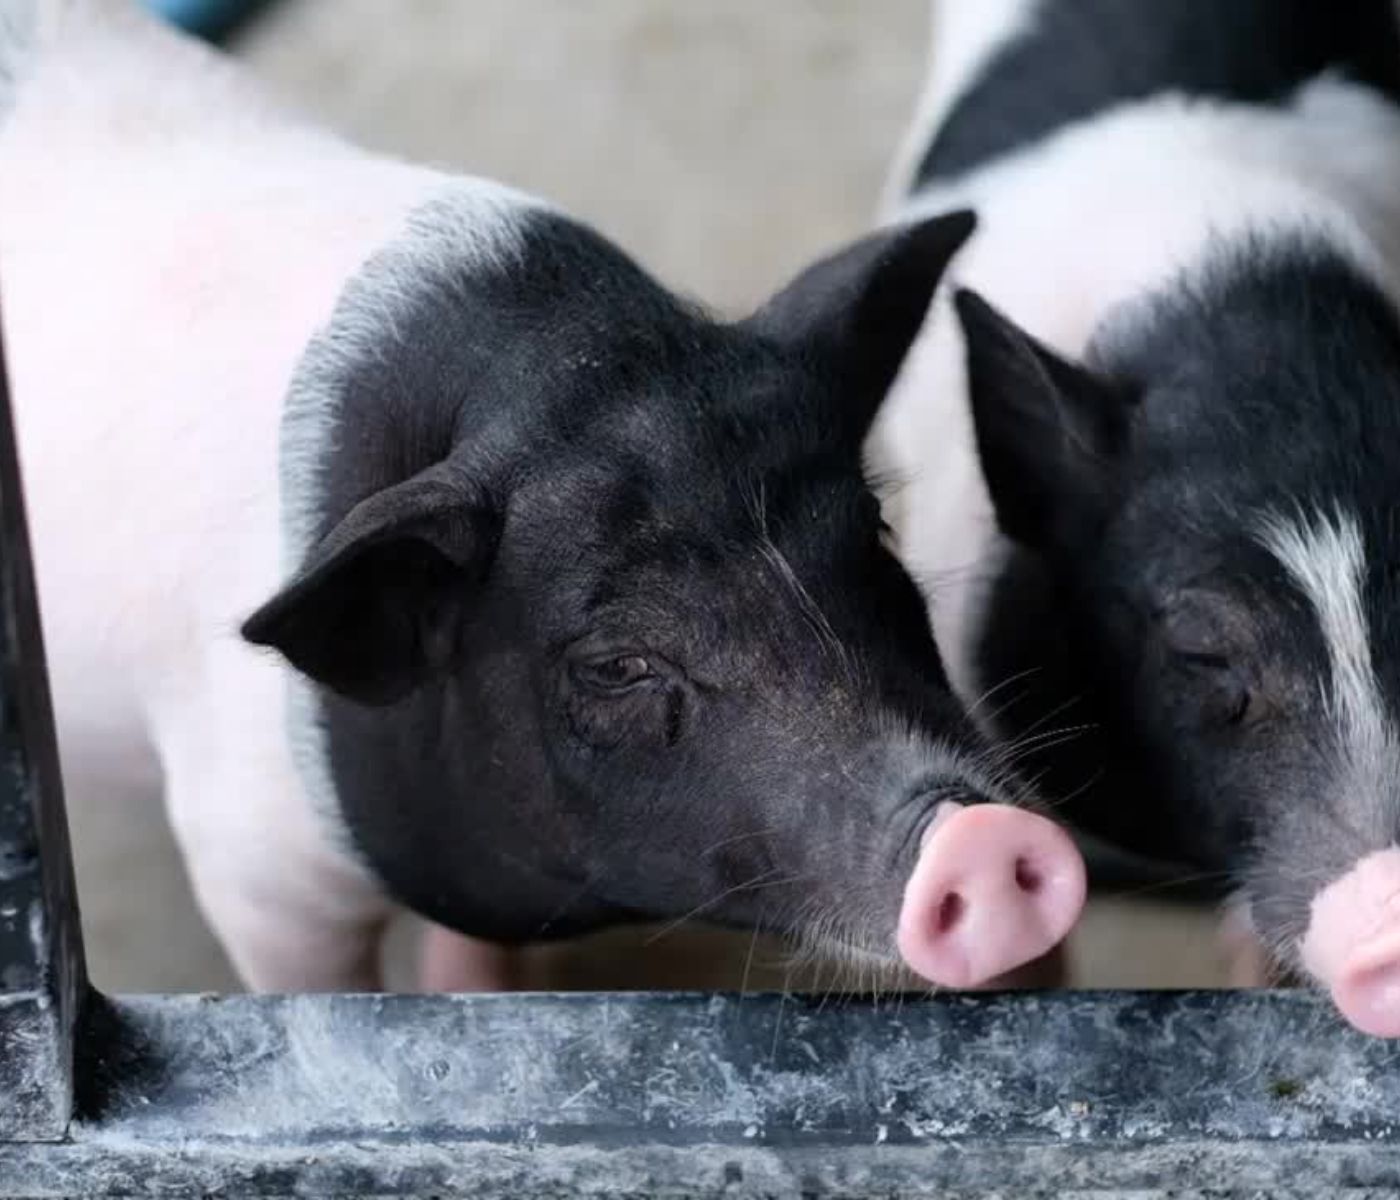 Capacitaciones en bienestar animal para el sector porcino